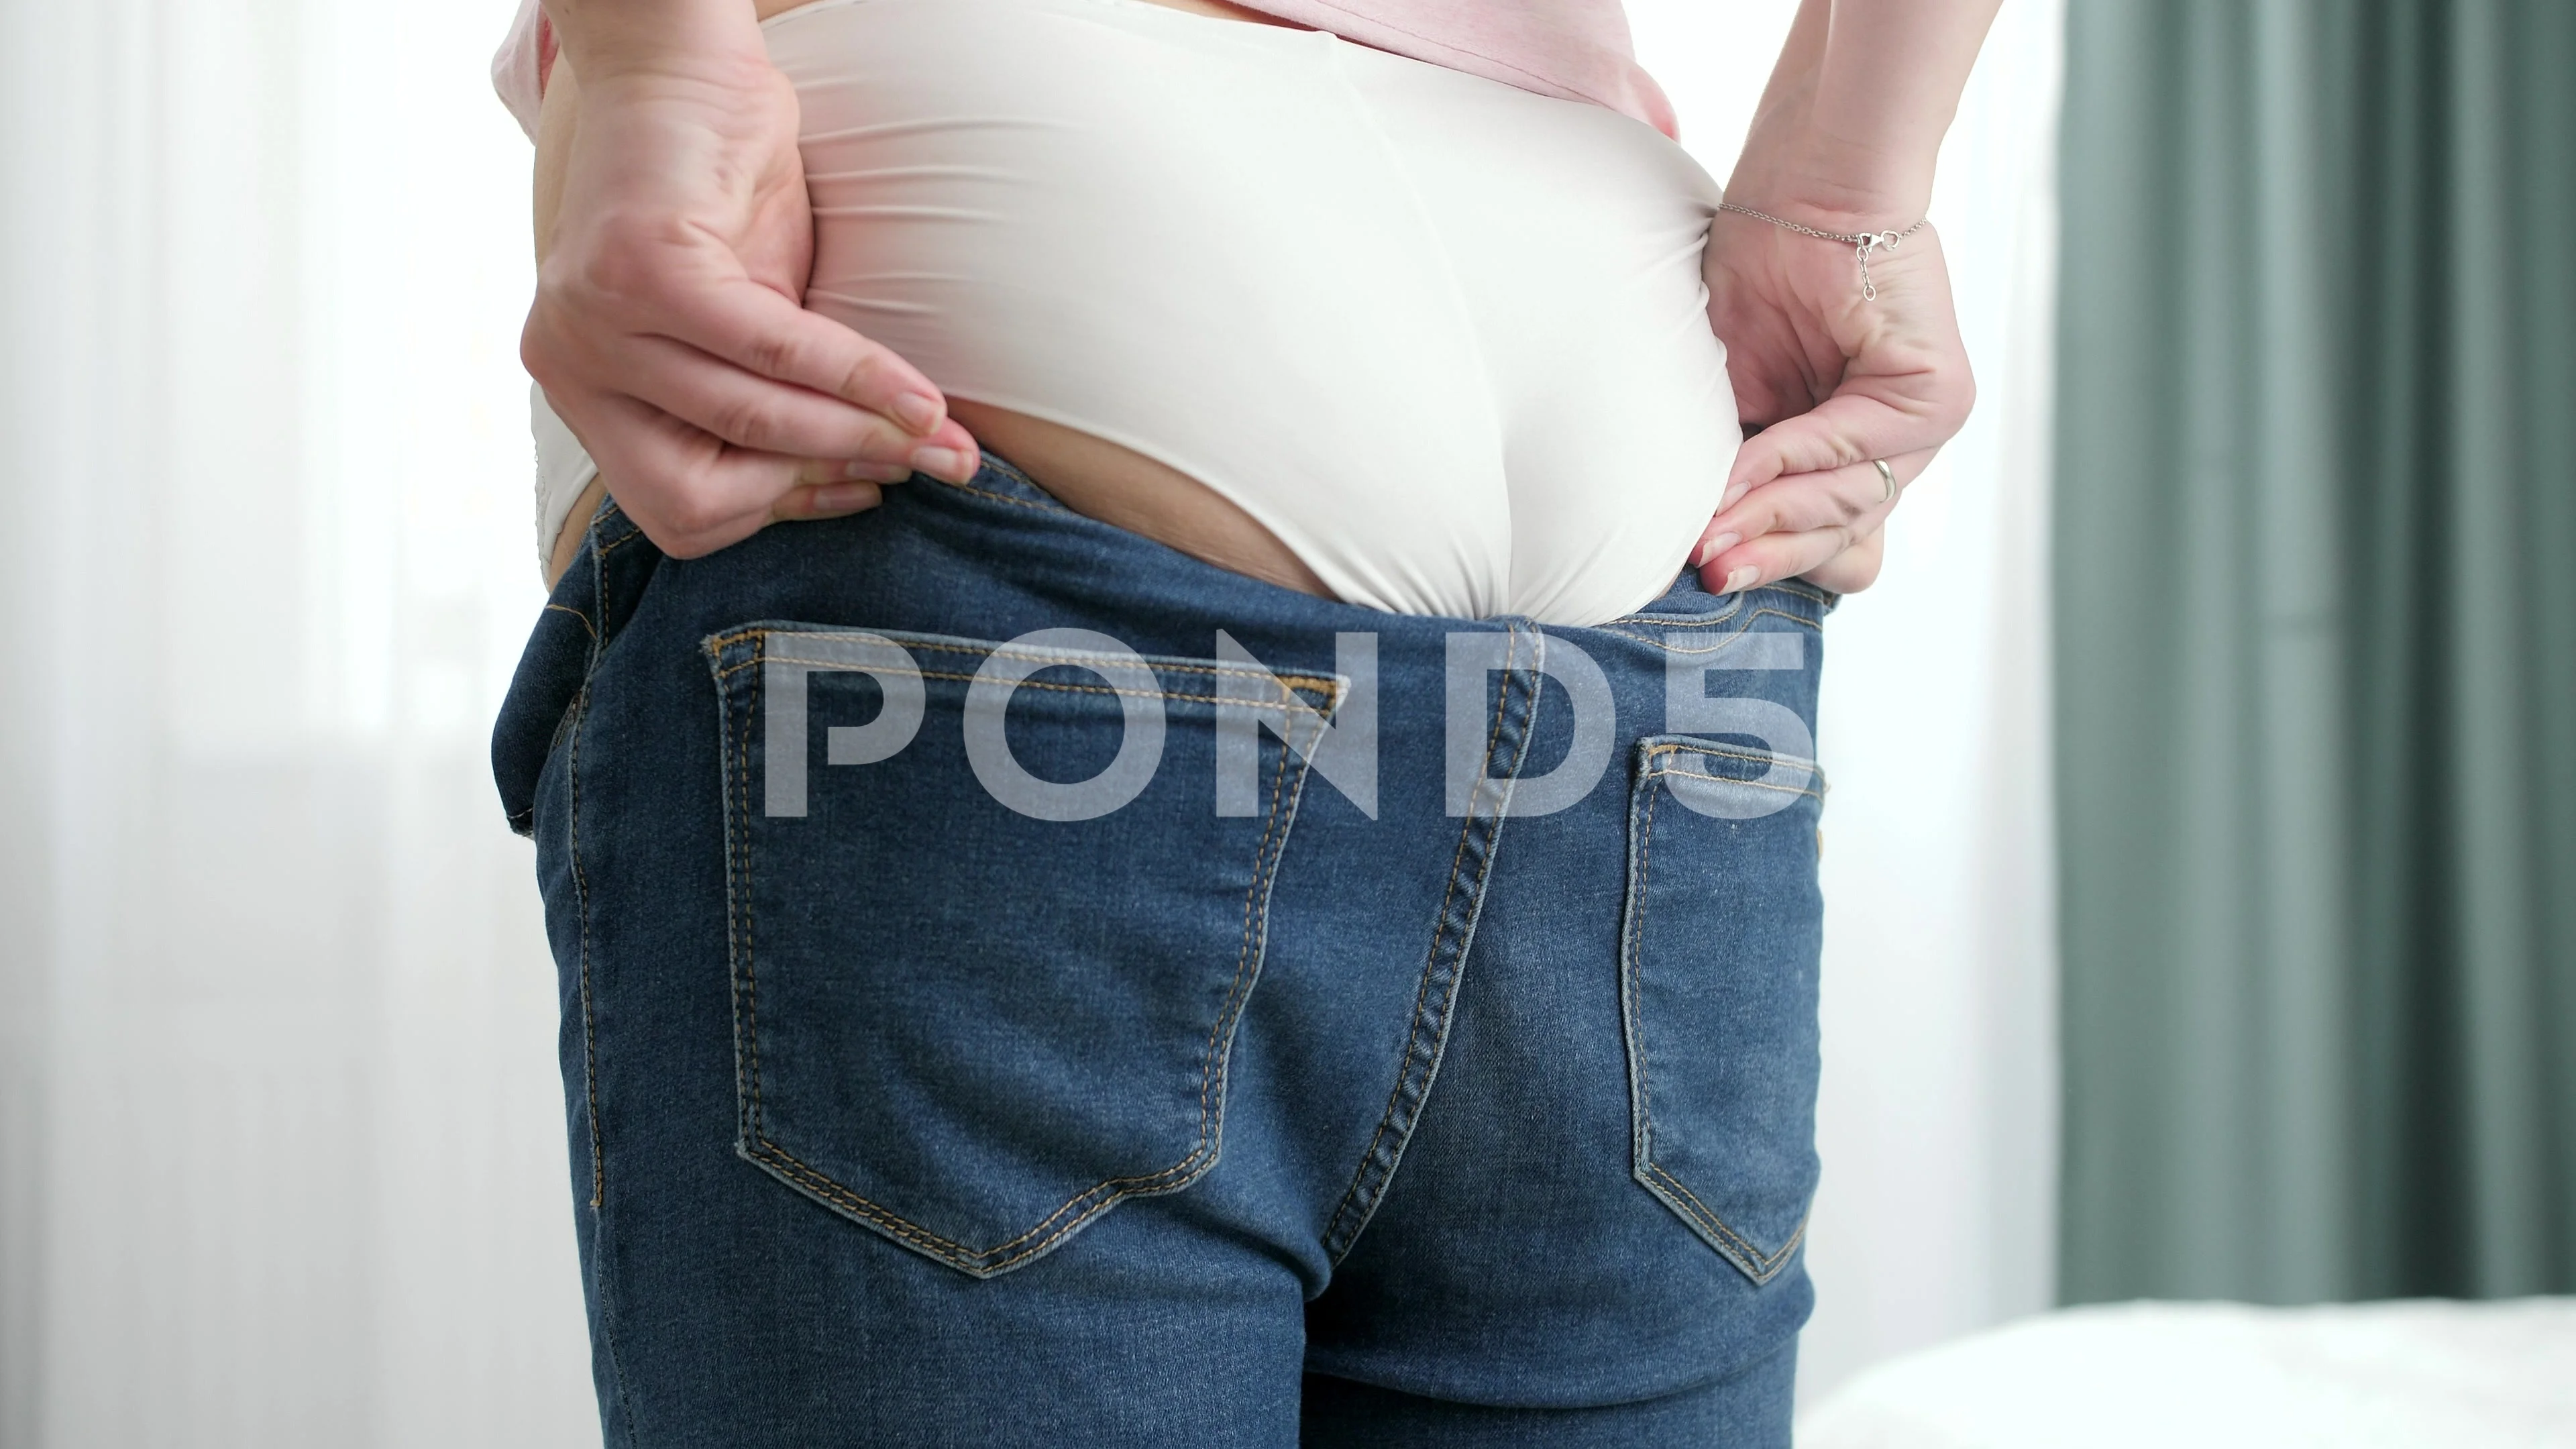 girls wearing tight jeans in public